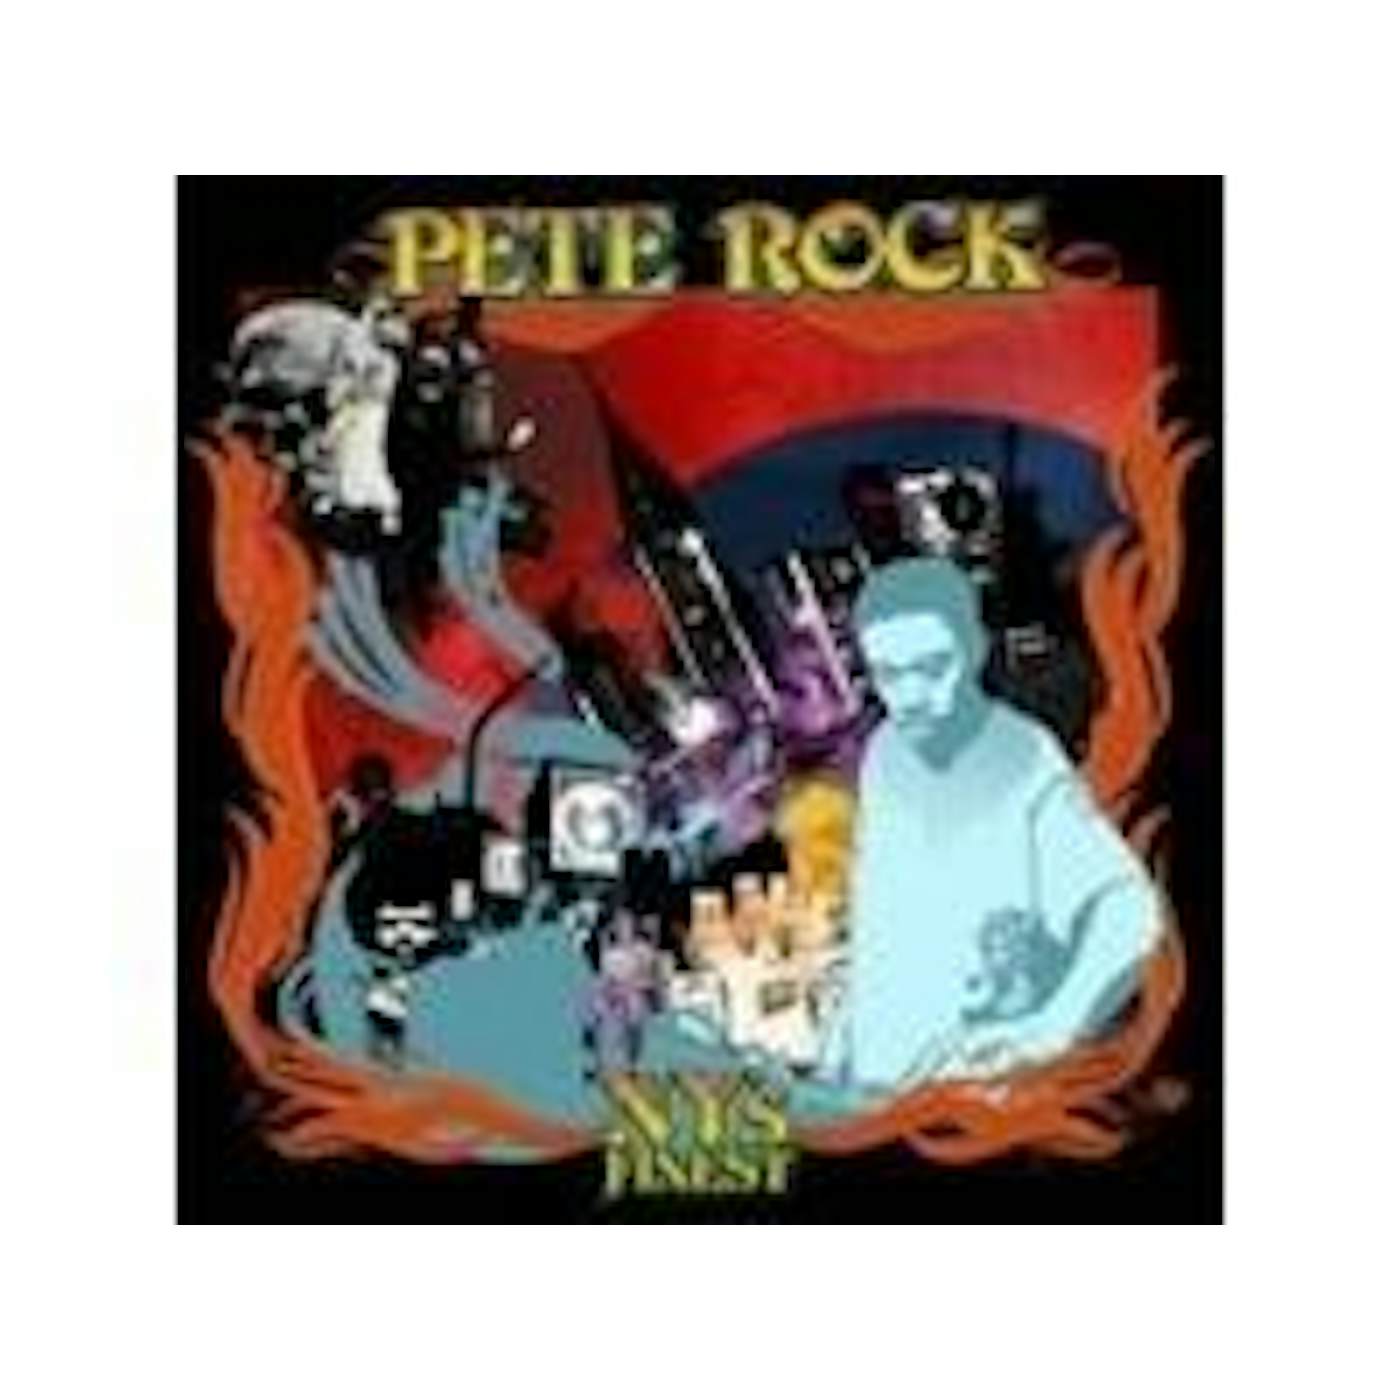 Pete Rock NY'S FINEST CD